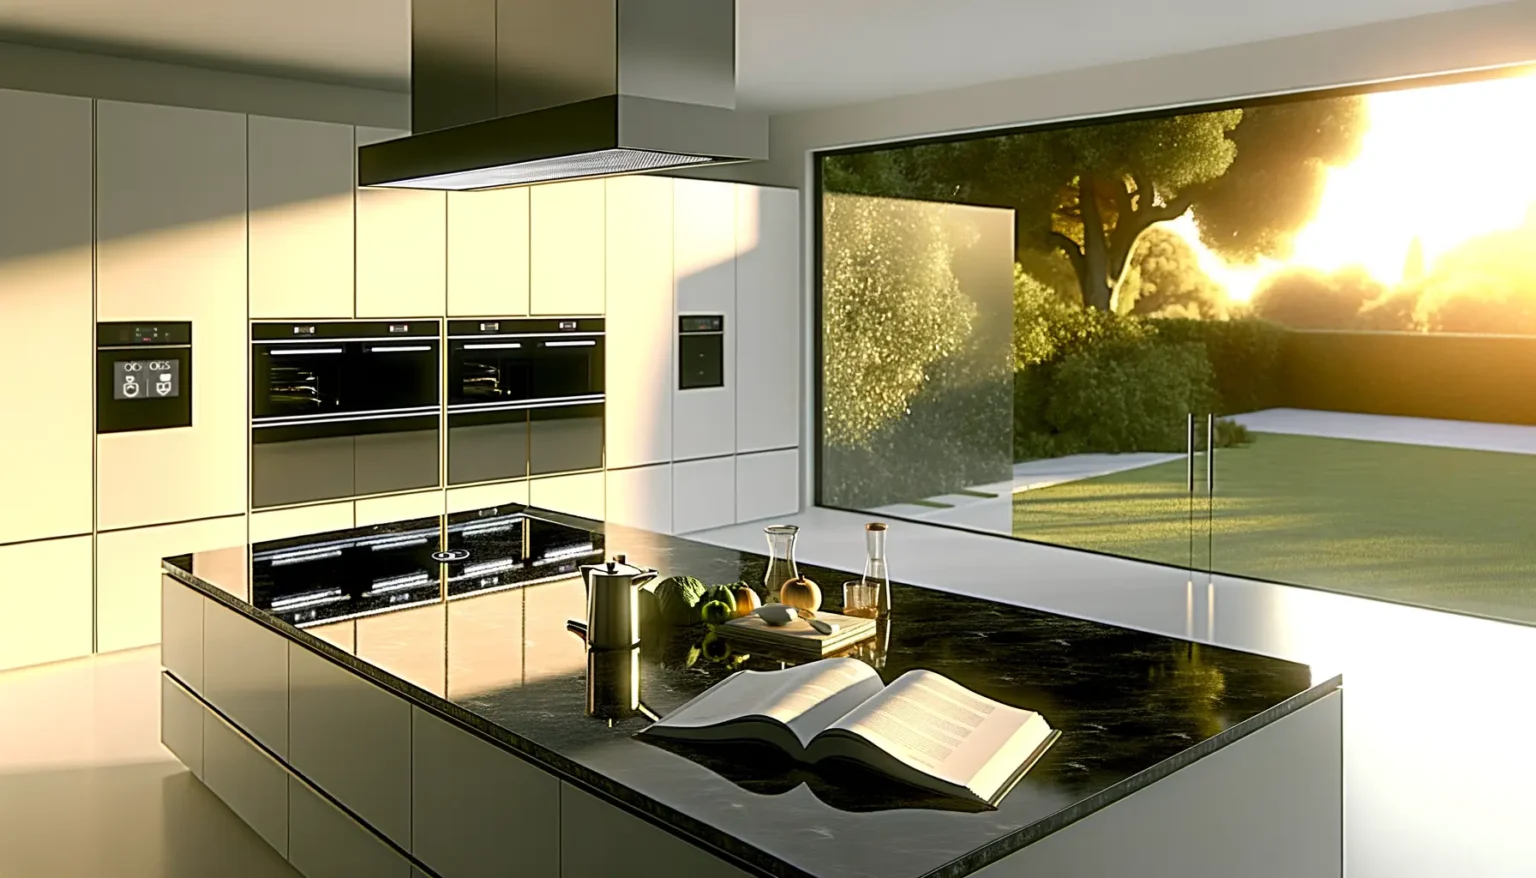 Moderne Küche mit glänzenden schwarzen Arbeitsplatten und hellen Schränken bei Sonnenuntergang, mit Blick auf einen Garten durch ein großes Fenster. Auf der Inselküche liegen ein offenes Kochbuch, Obst und Küchenutensilien.